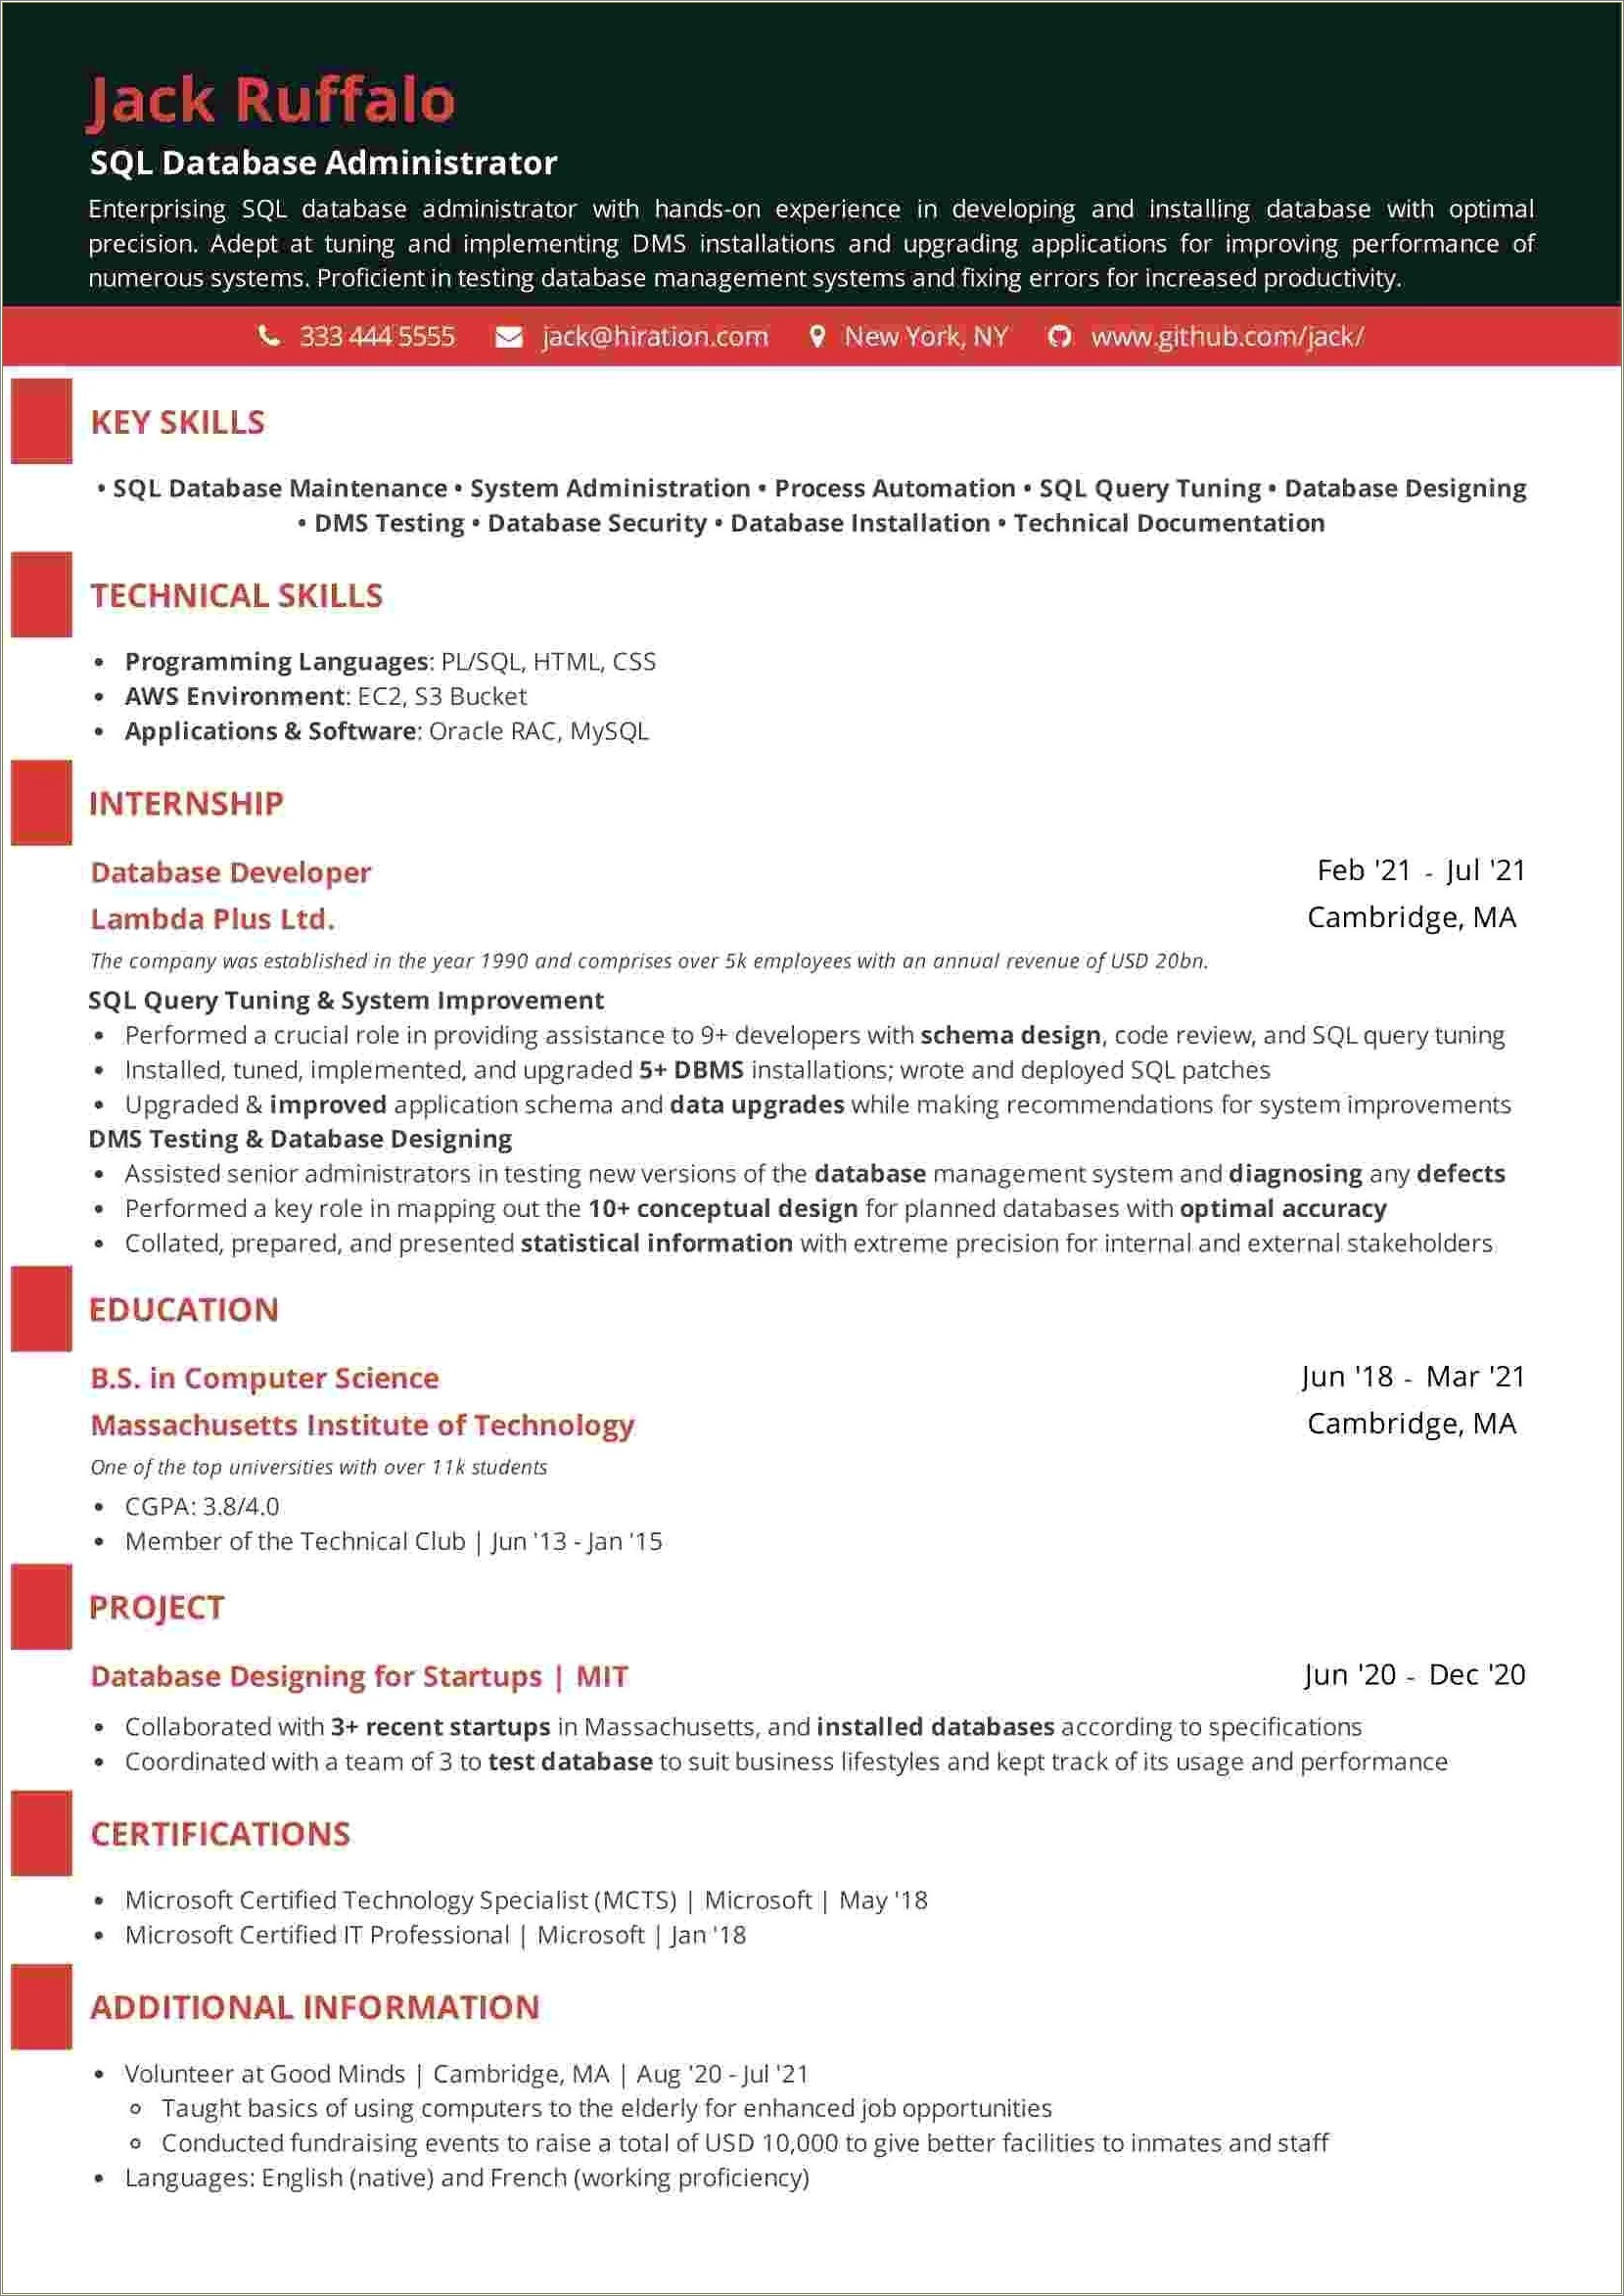 Sample Resume For Sql Database Administrator